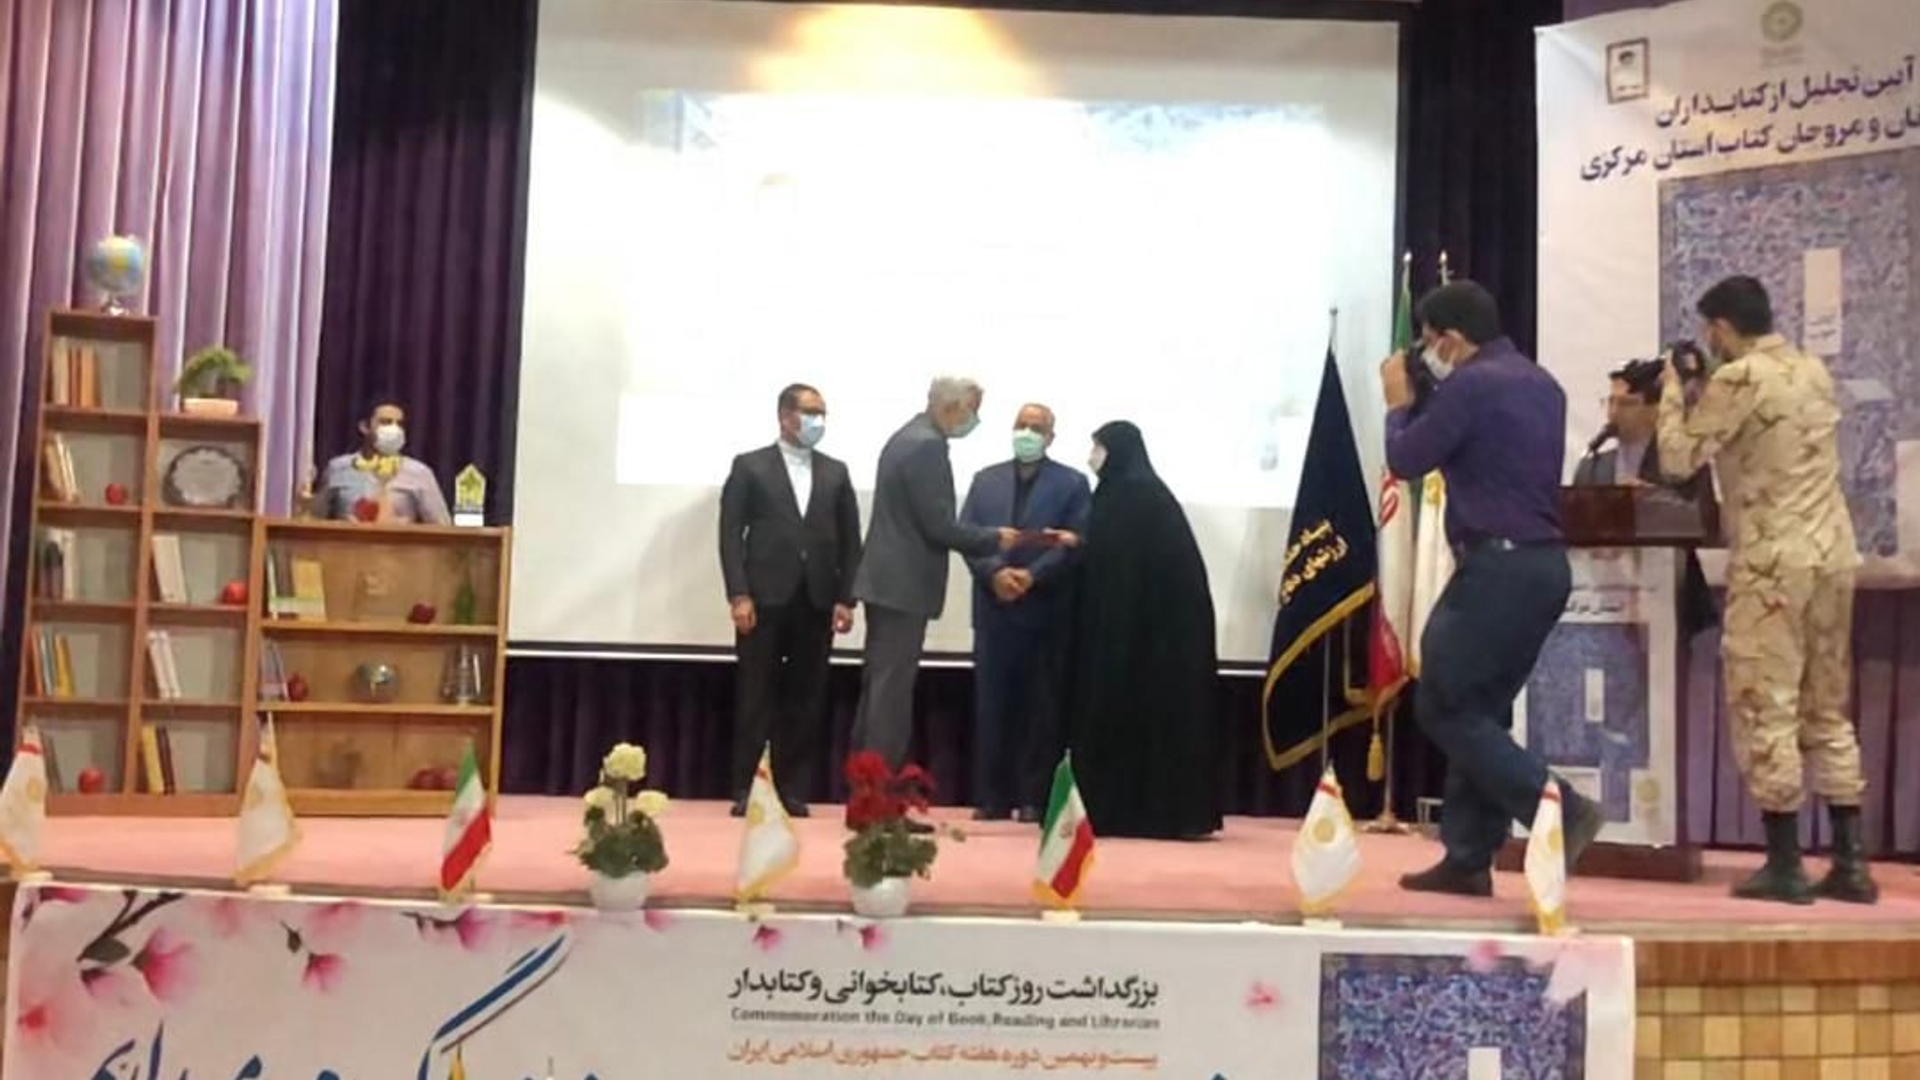 انتخاب انجمن کتابخانه های عمومی شهرستان آشتیان به عنوان انجمن برتر در سطح استان مرکزی